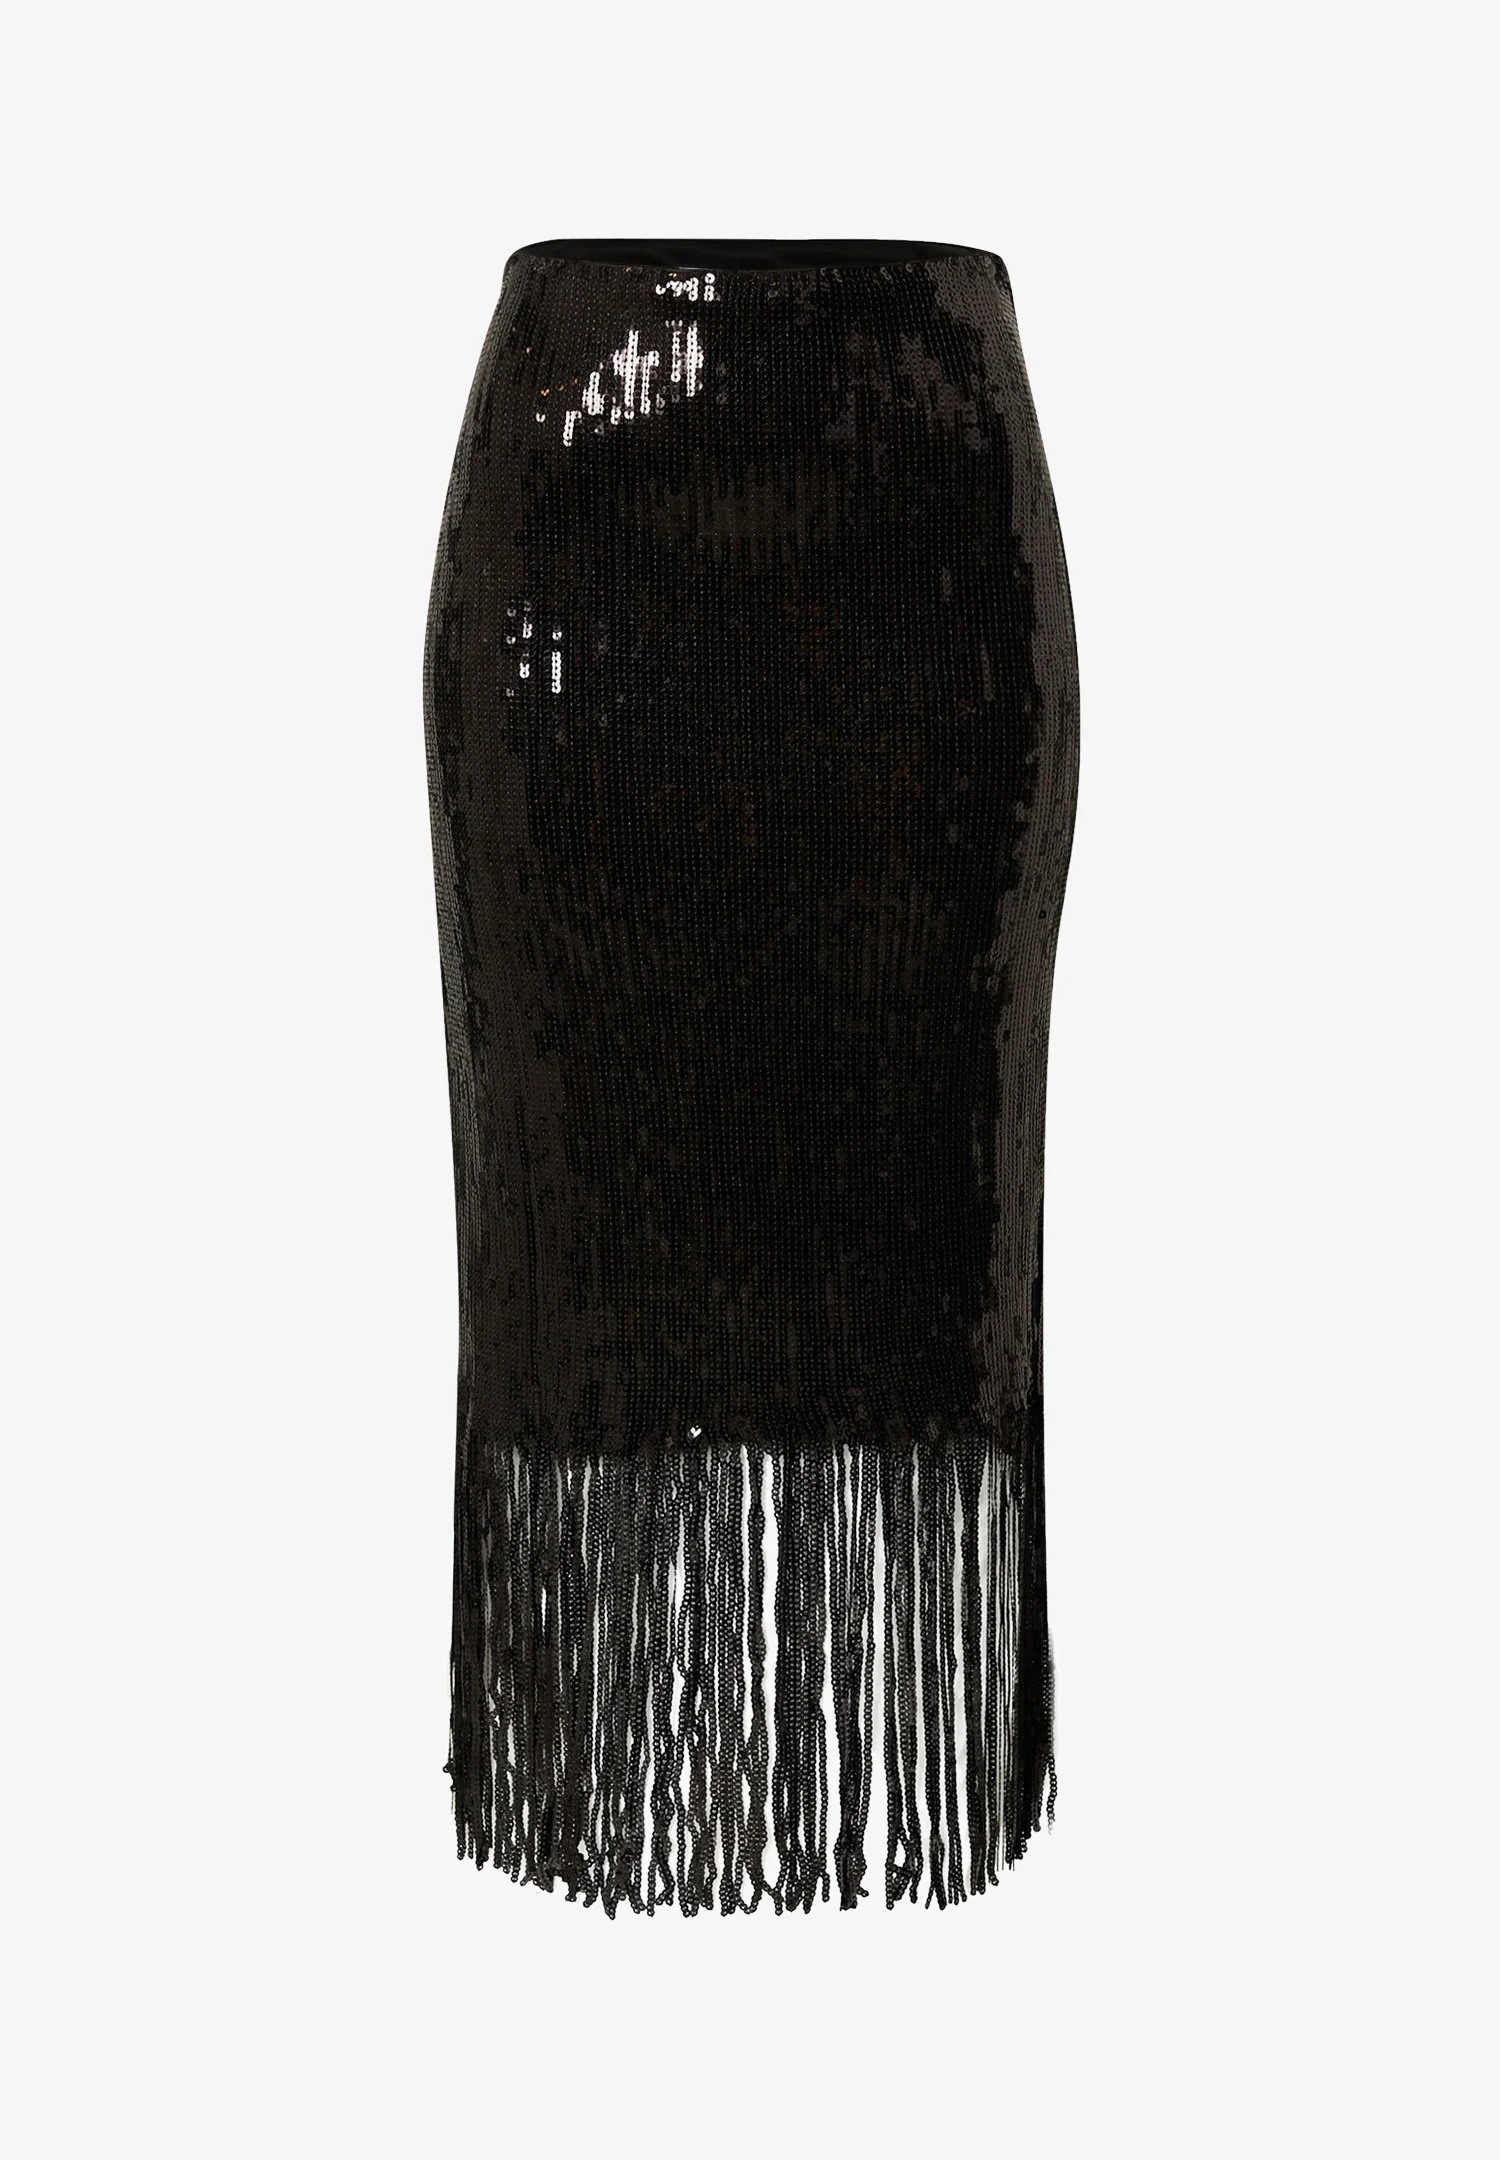 Falda de lentejuelas y flecos de Edited, en Zalando (69,90 euros)